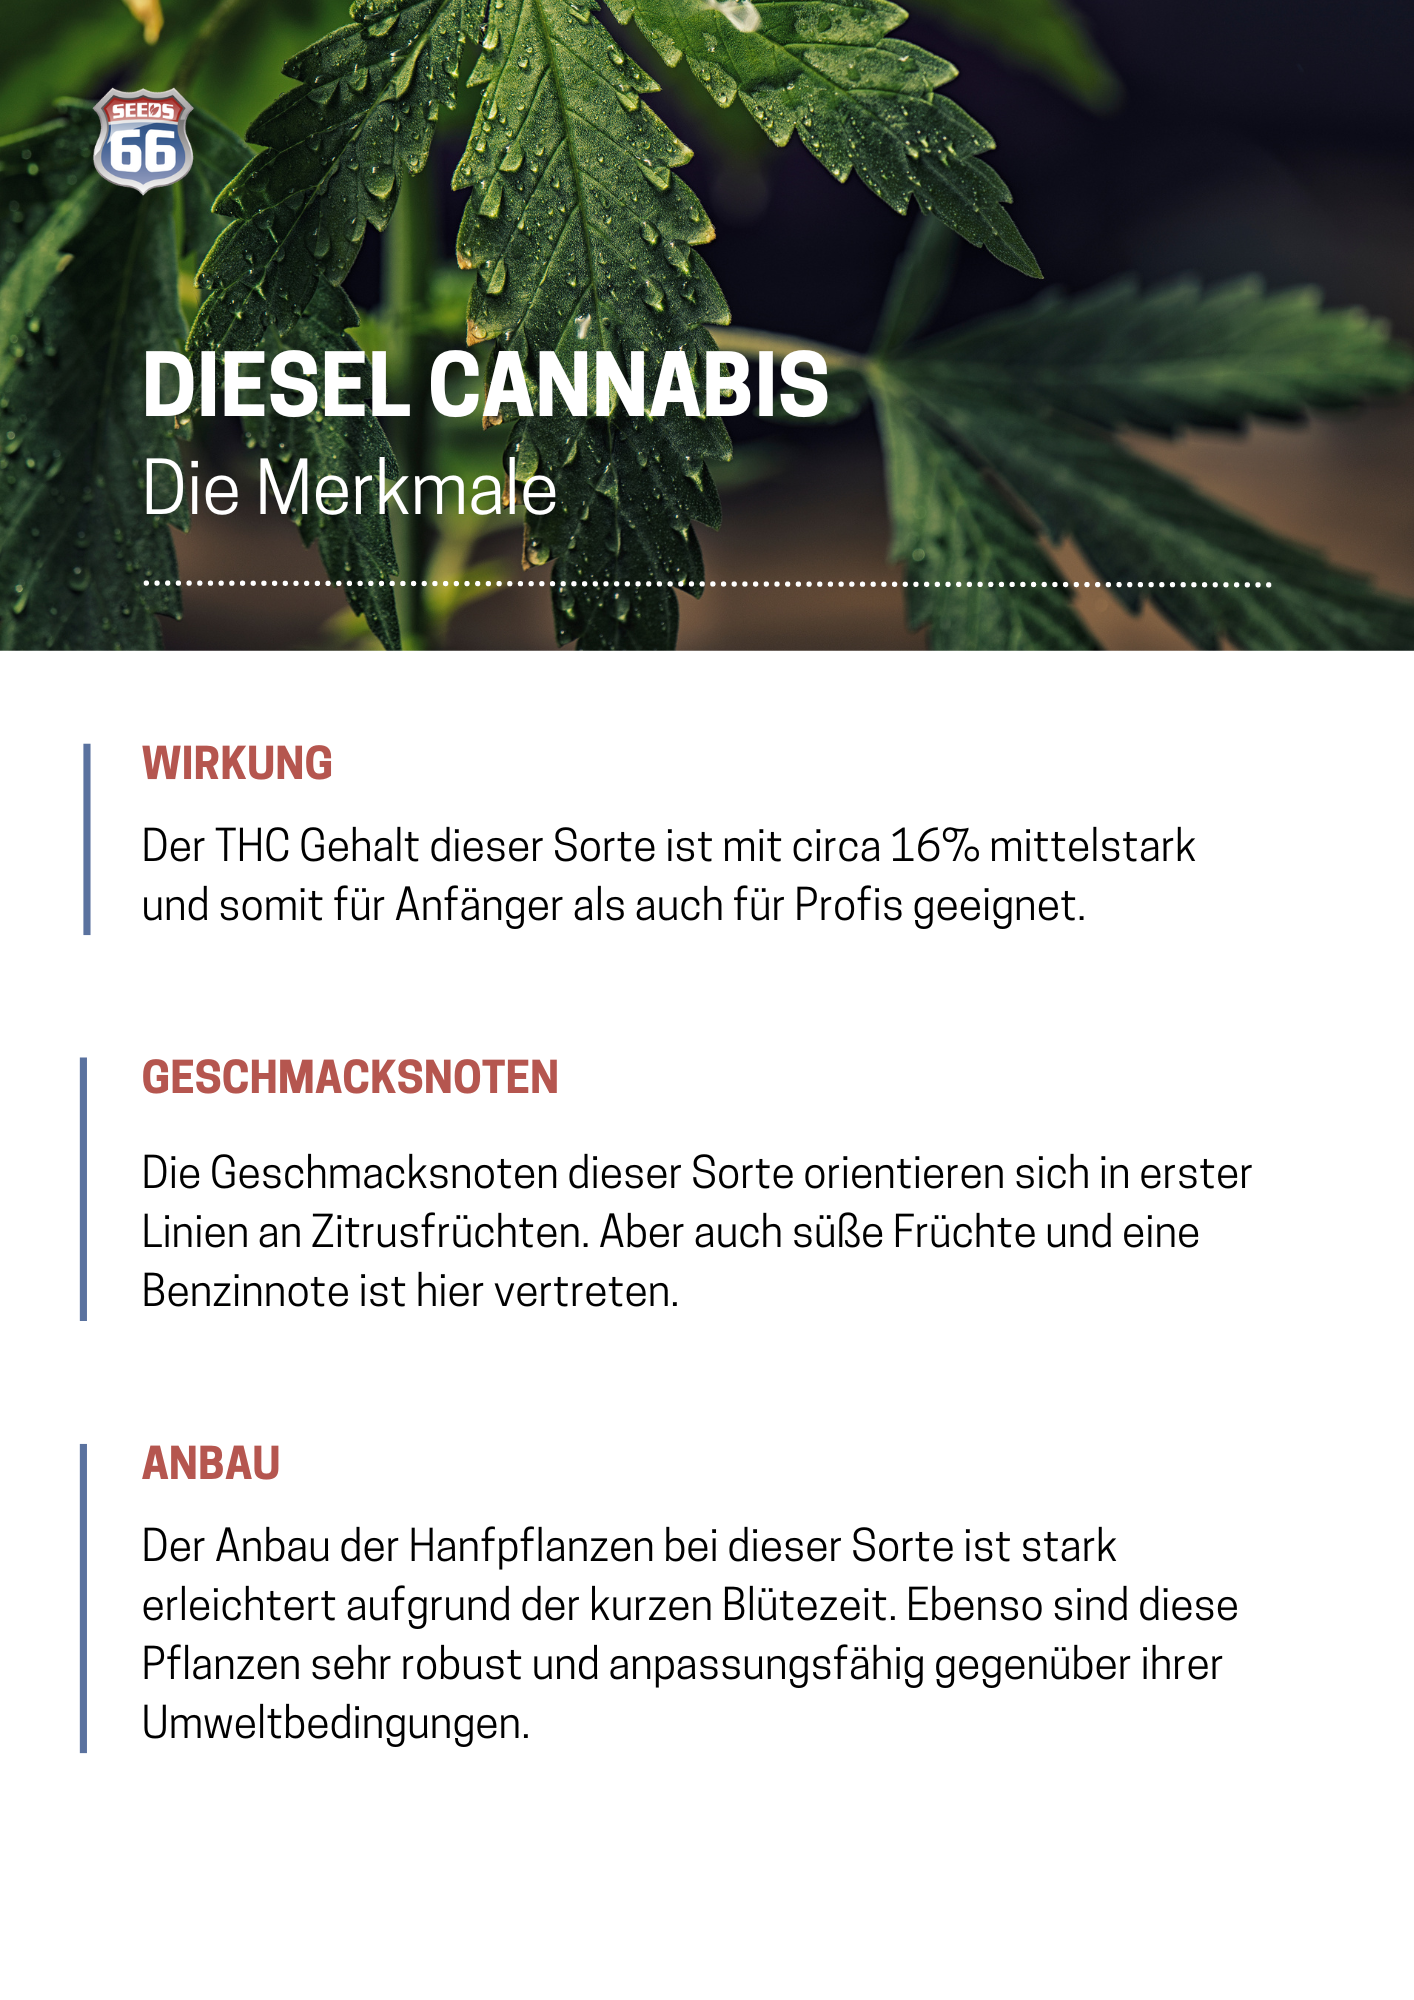 merkmale_von_diesel_cannabis_grafik